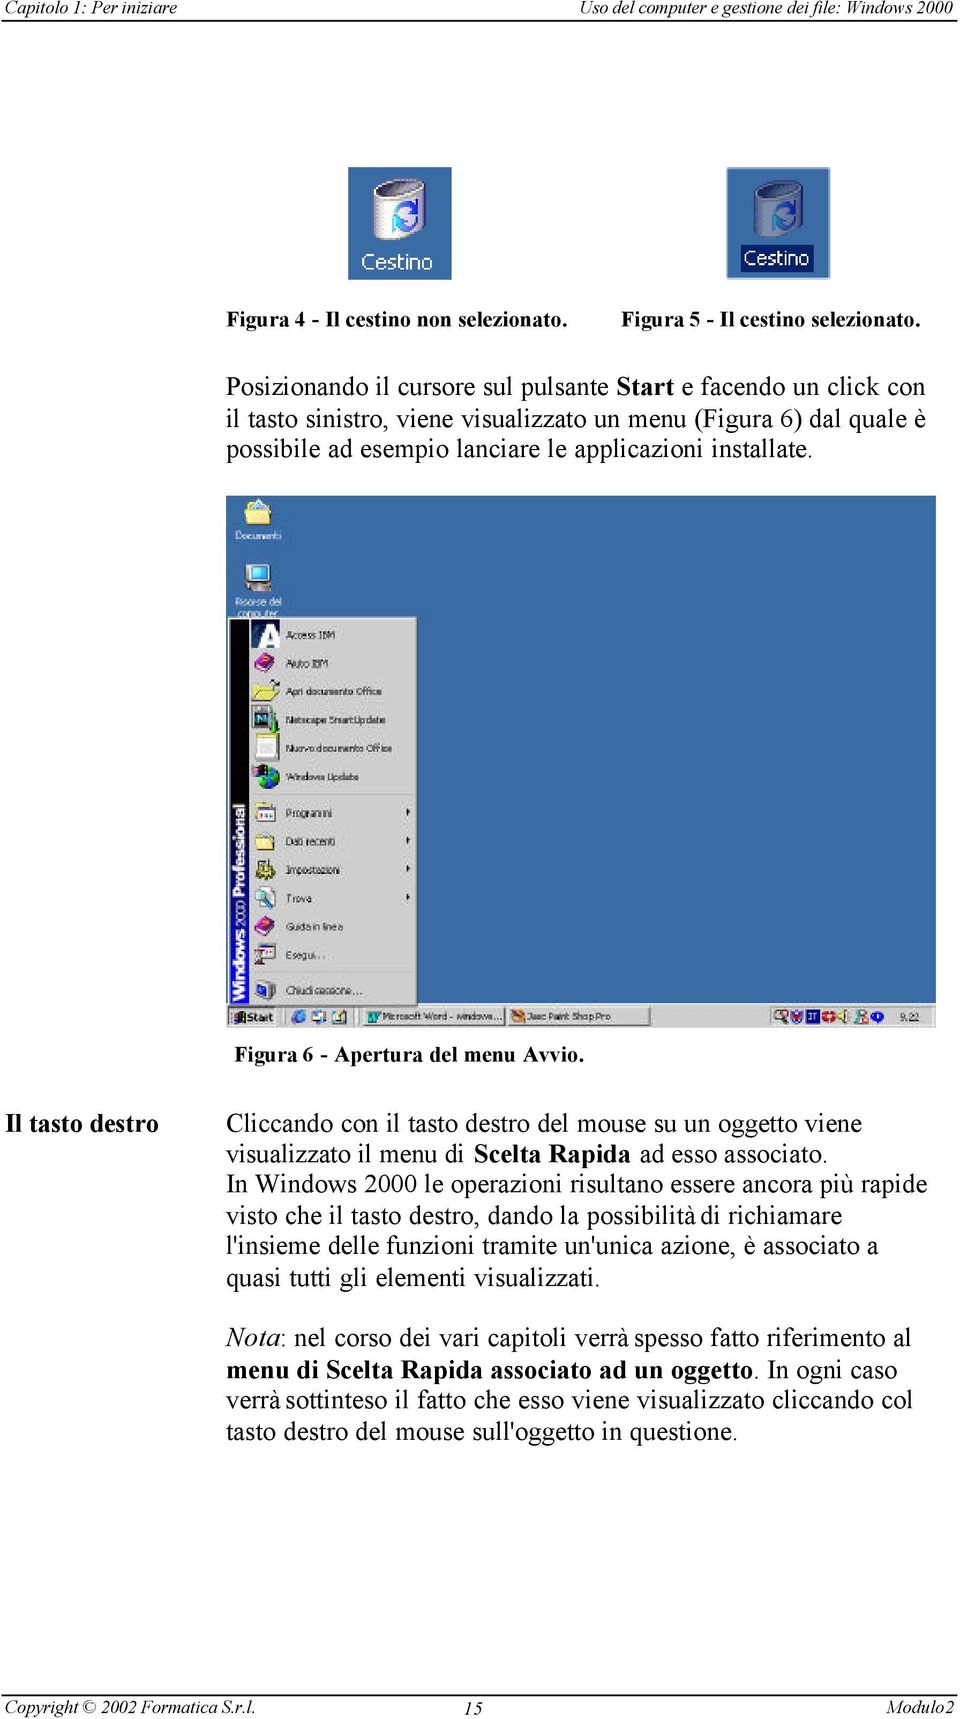 Figura 6 - Apertura del menu Avvio. Il tasto destro Cliccando con il tasto destro del mouse su un oggetto viene visualizzato il menu di Scelta Rapida ad esso associato.